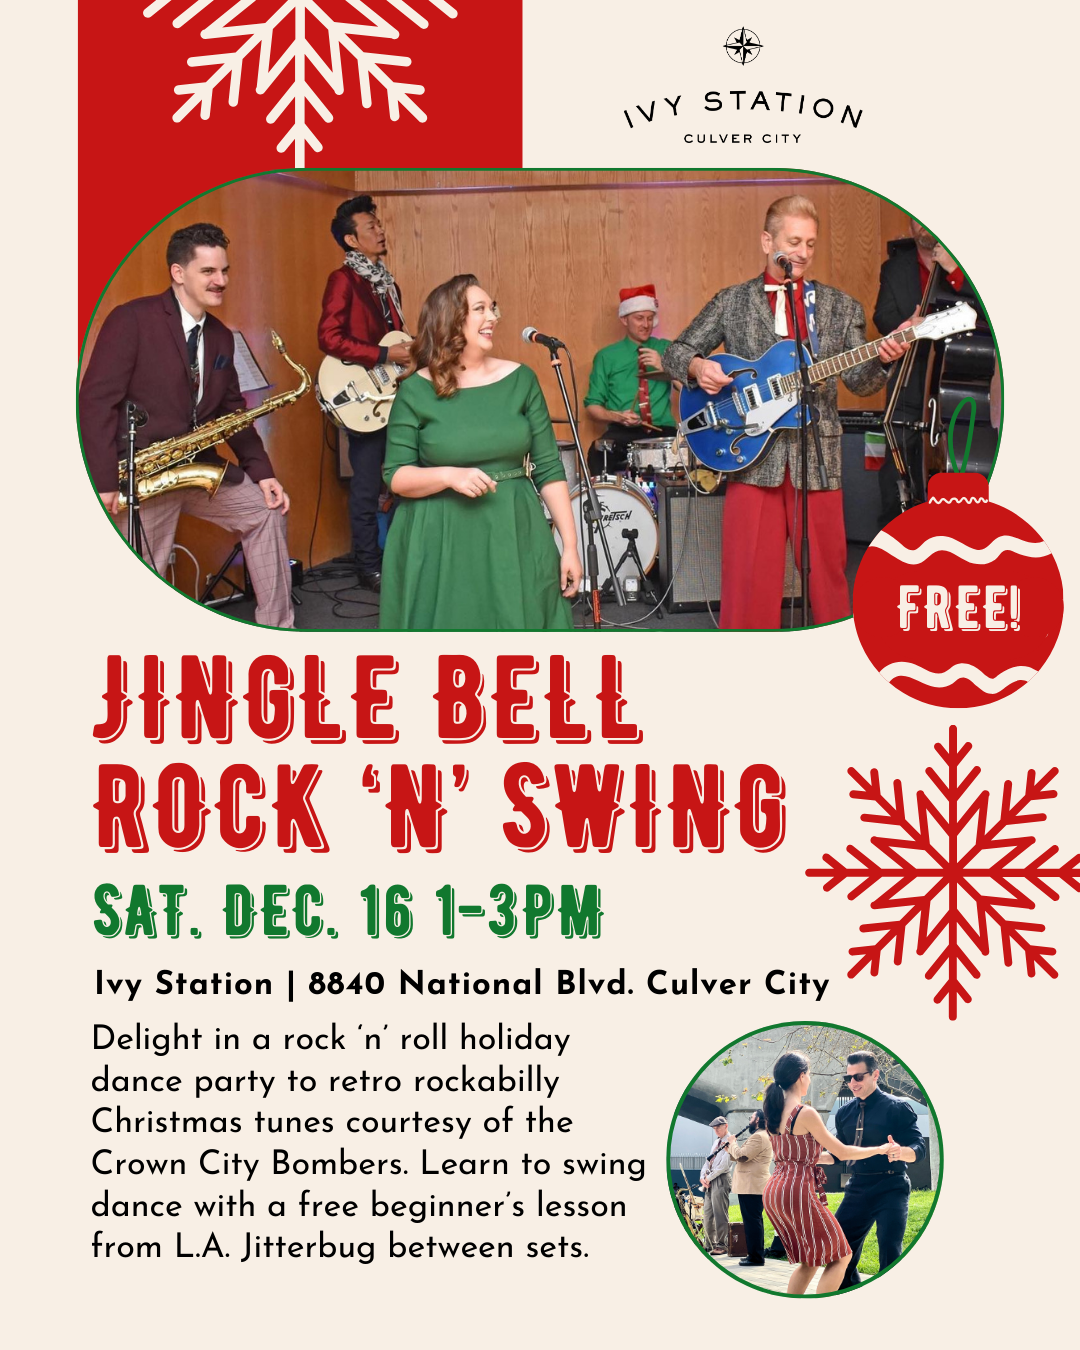 Jingle Bell Rock ‘n’ Swing